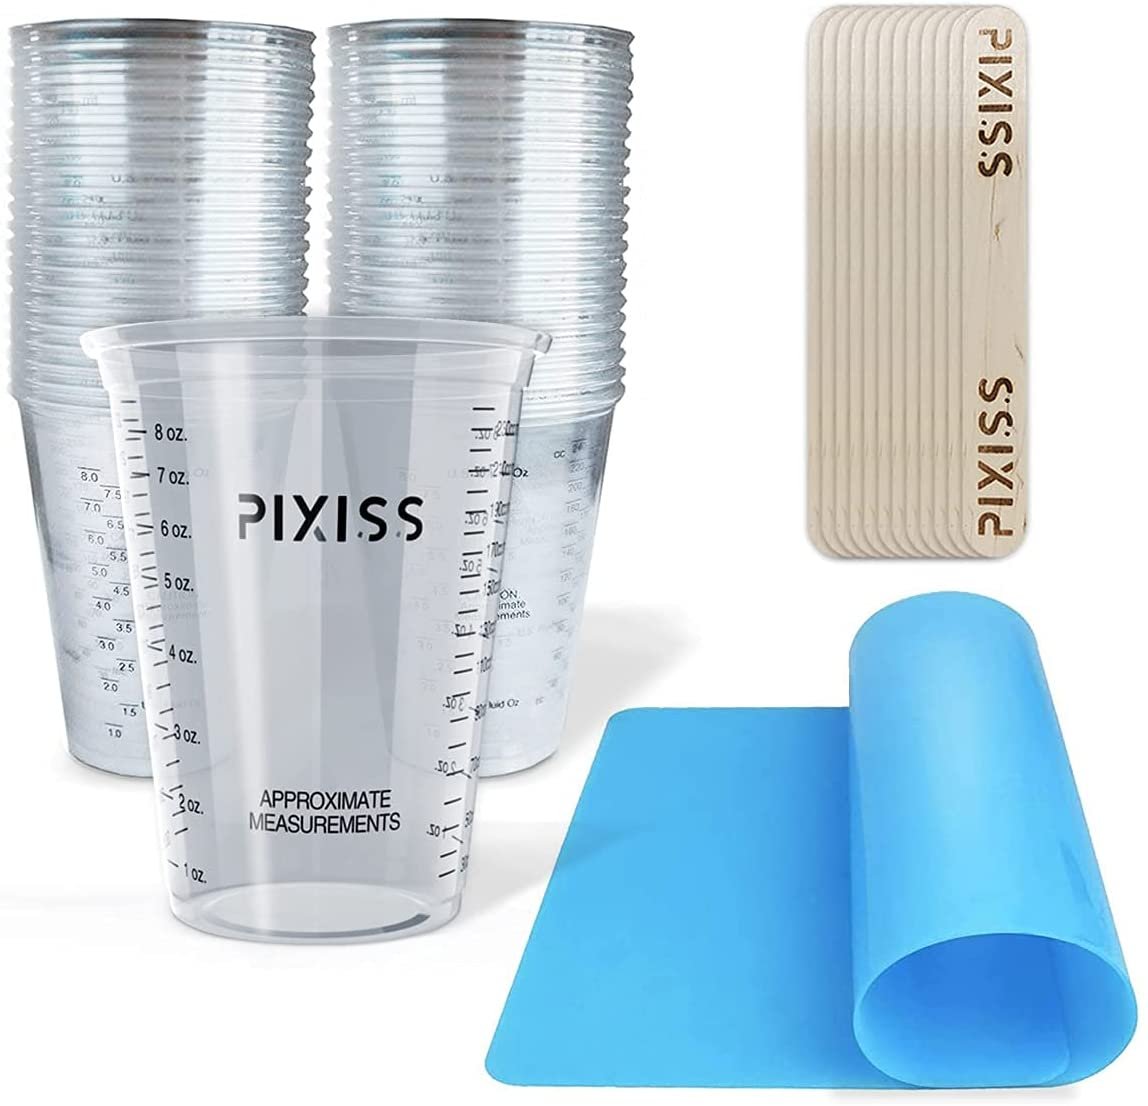 Resin Mixer Epoxy Mixer Paddles - 6 Reusable Pixiss Multipurpose bidir